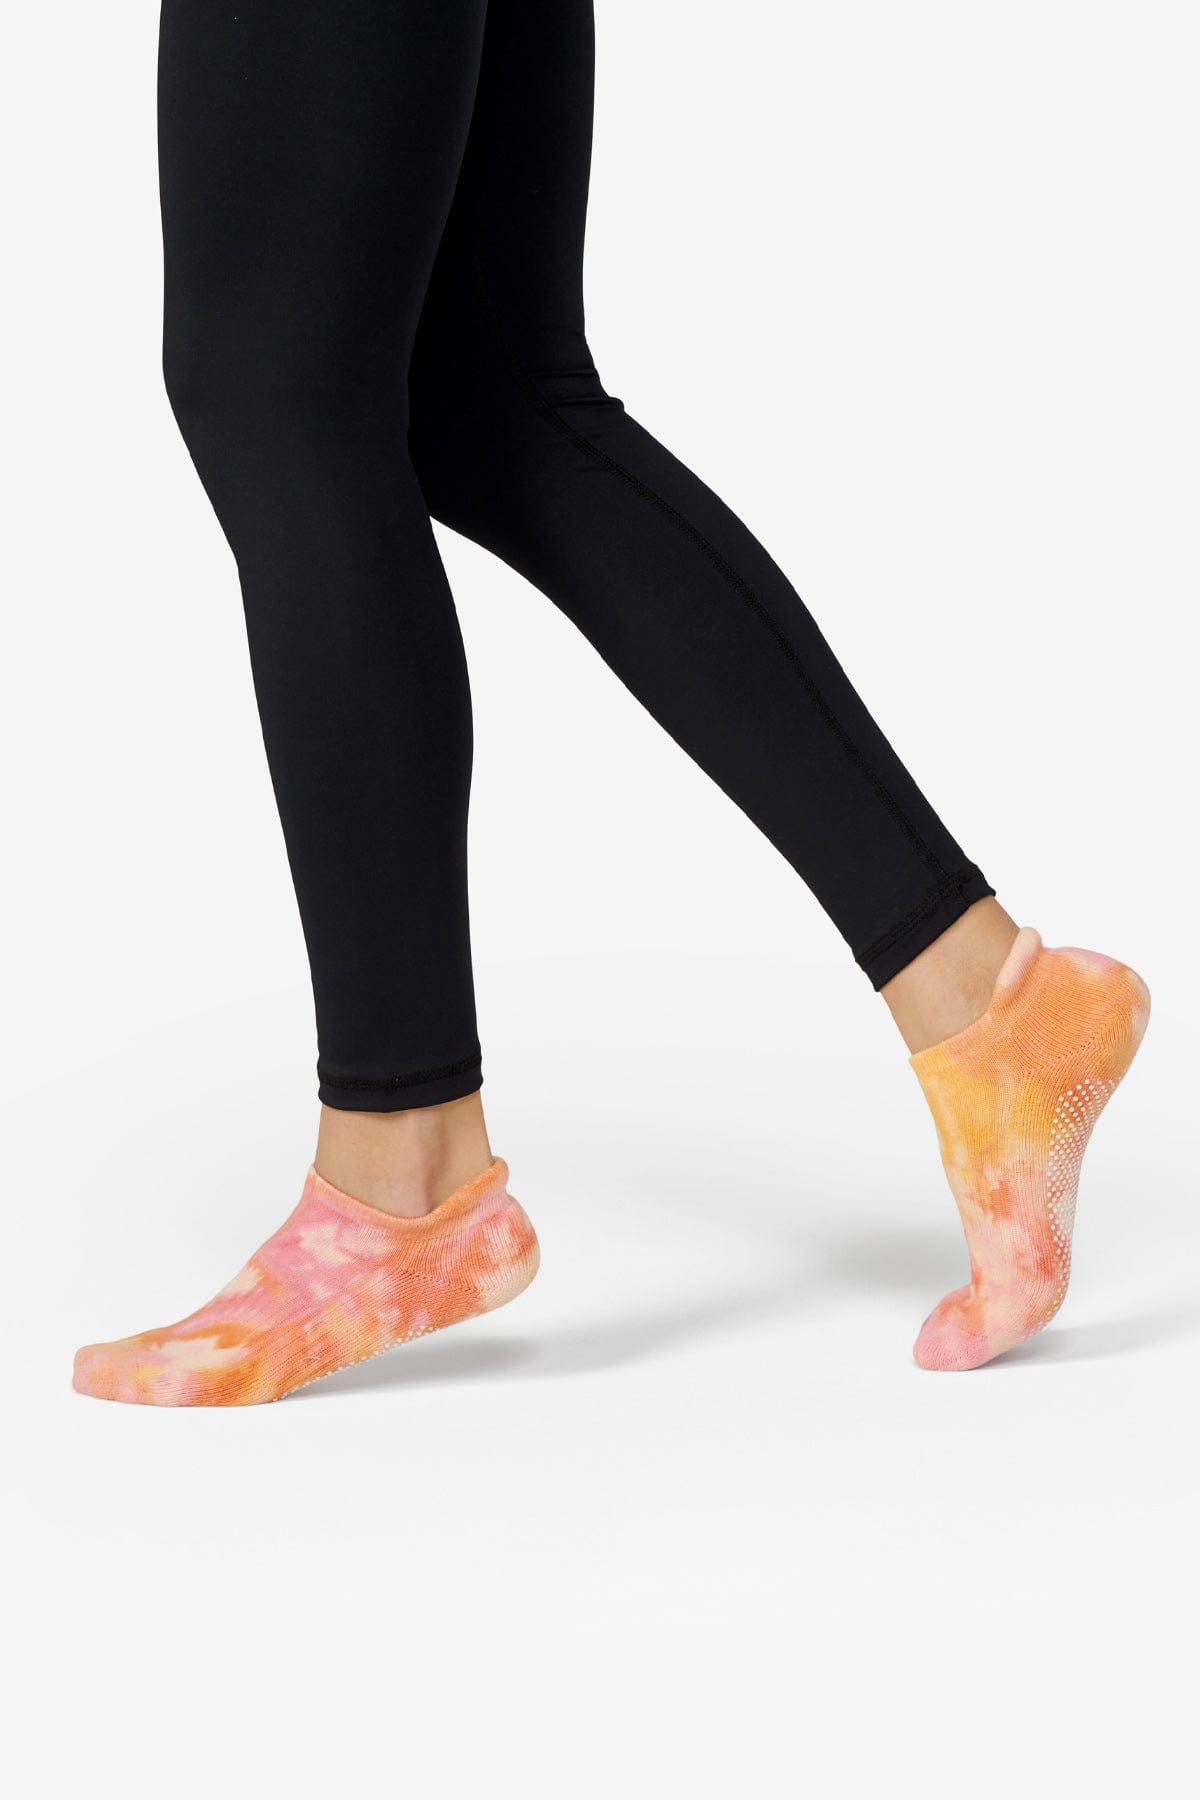 Grippy socks in Sunrise – Daub + Design